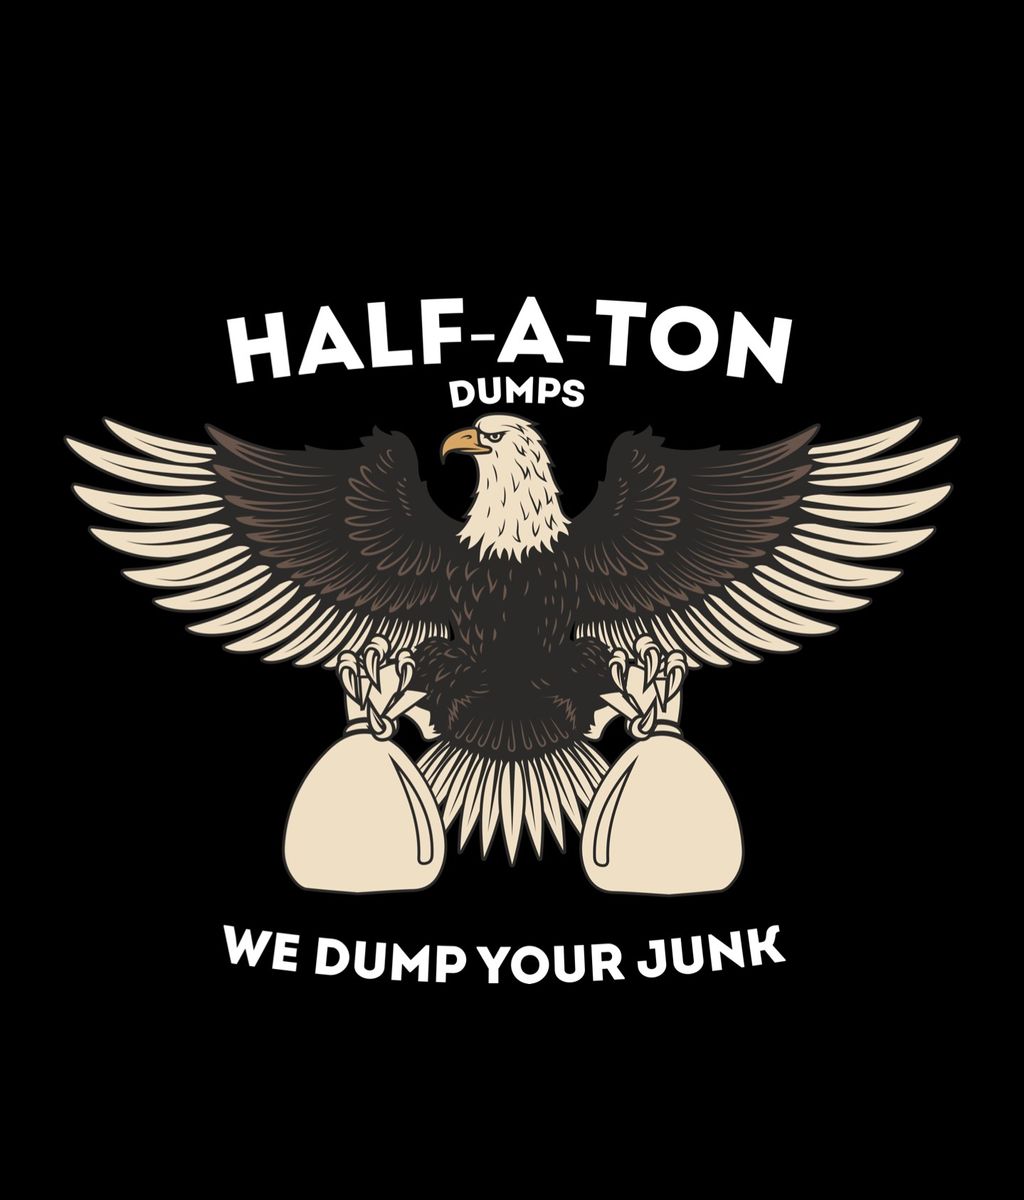 Half-A-Ton Dumps